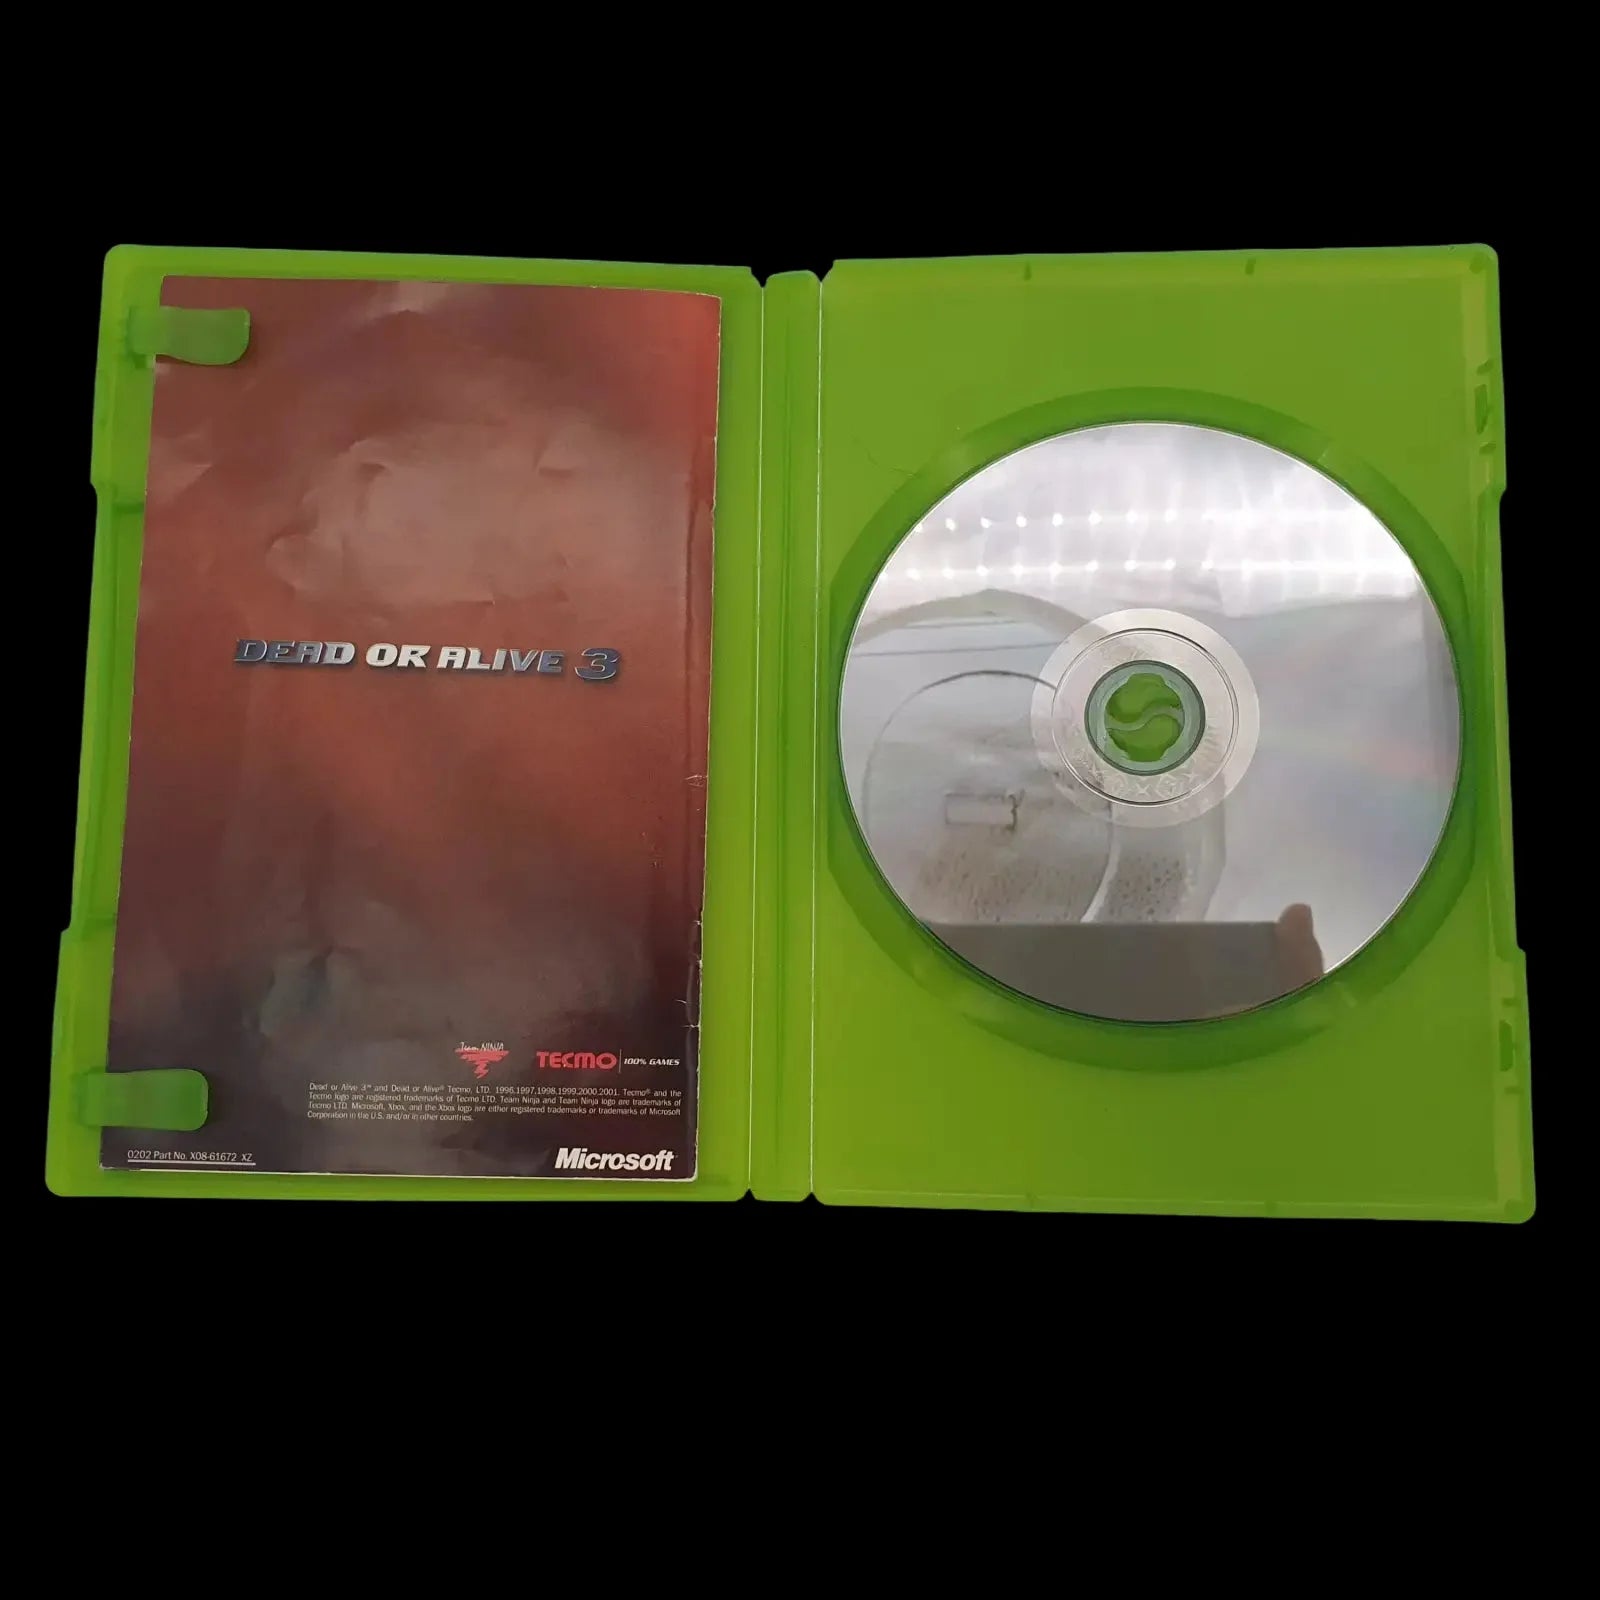 Dead Or Alive 3 Xbox Original Tecmo 2001 Video Game Cib